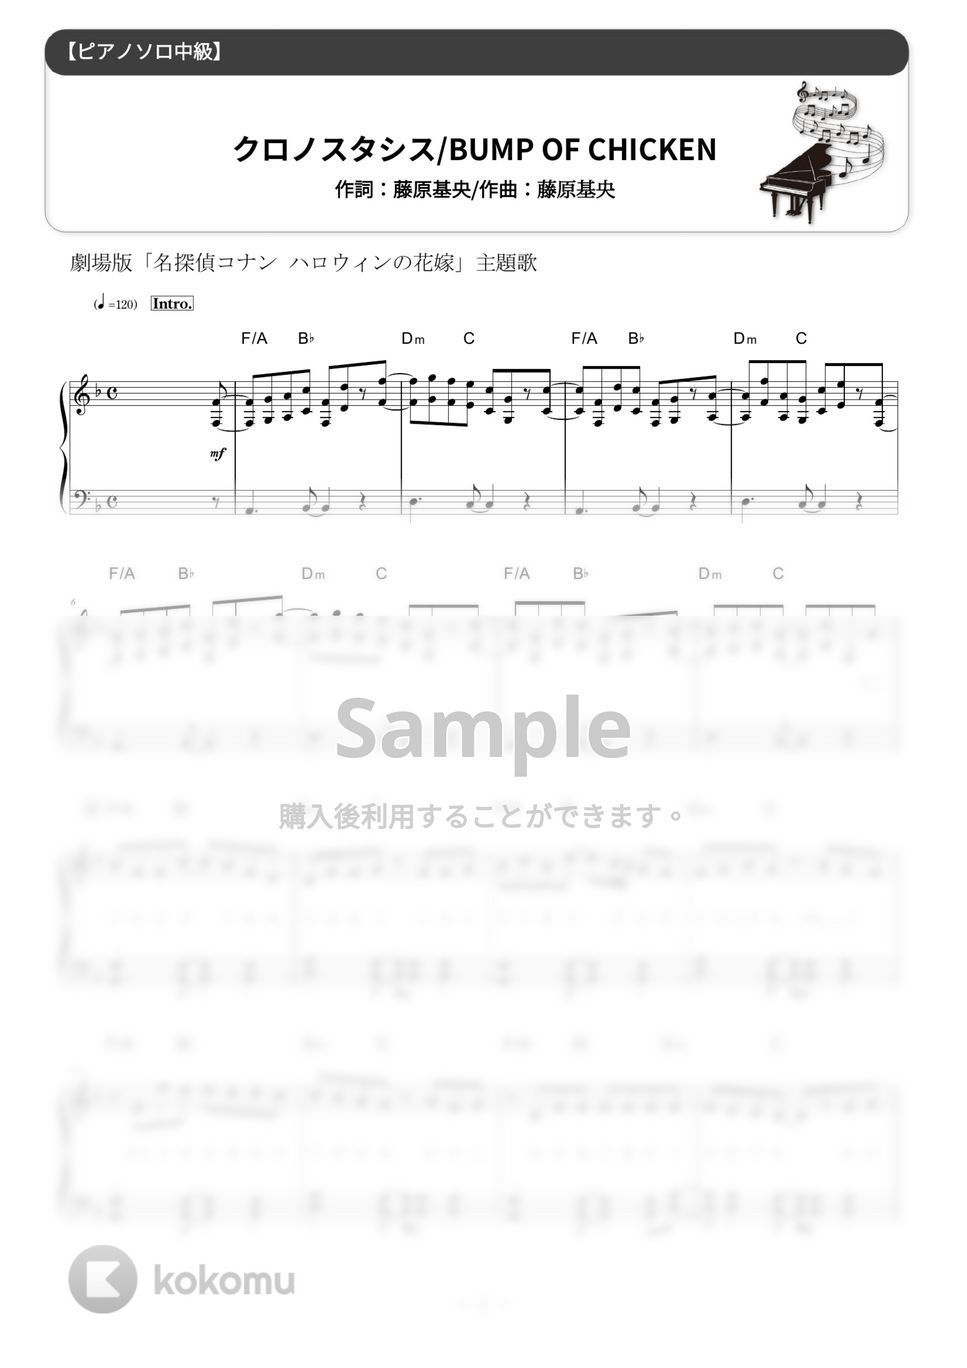 BUMP OF CHICKEN - クロノスタシス (難易度：★★★☆☆) by Dさん